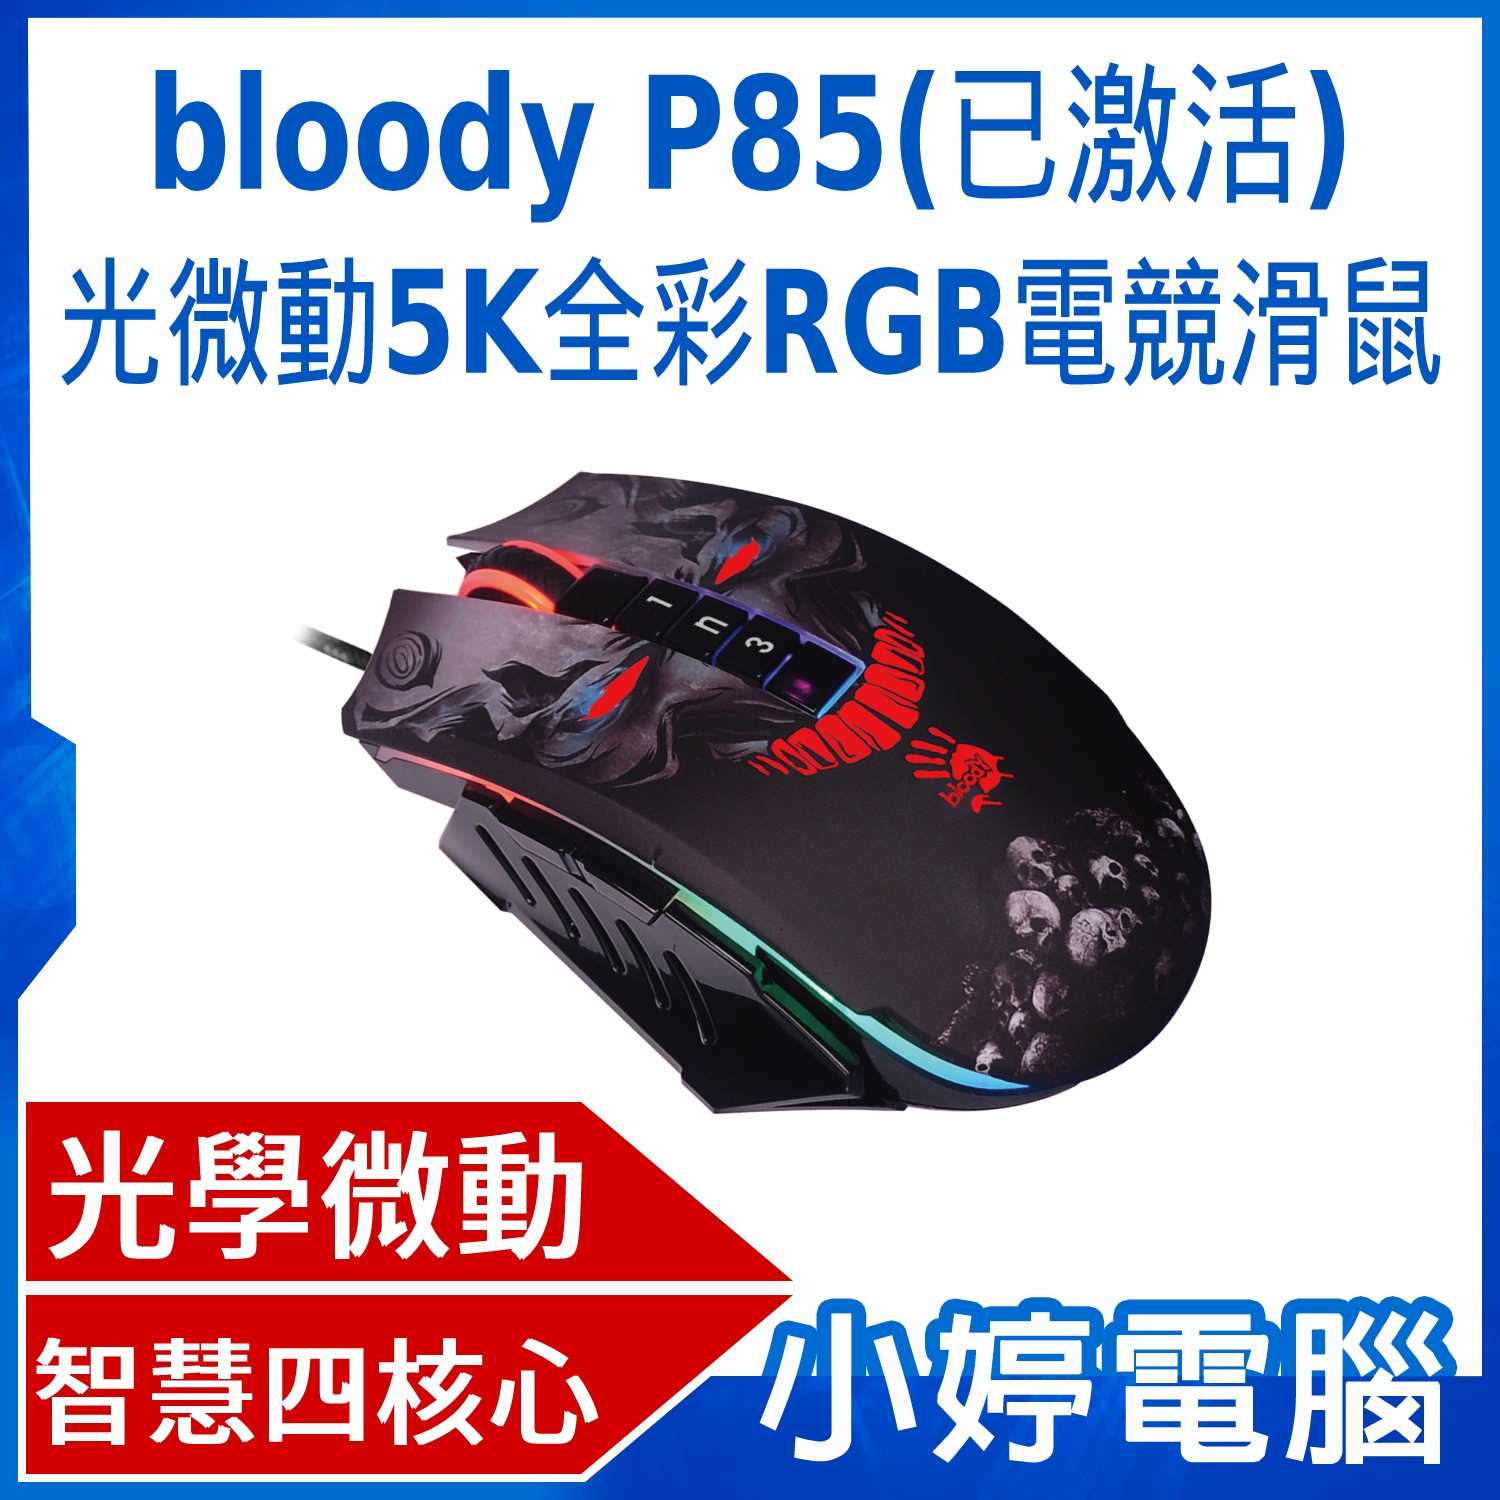 【小婷電腦】bloody P85(已激活) 光微動5K全彩RGB電競滑鼠-激活功能已於出貨時開啟